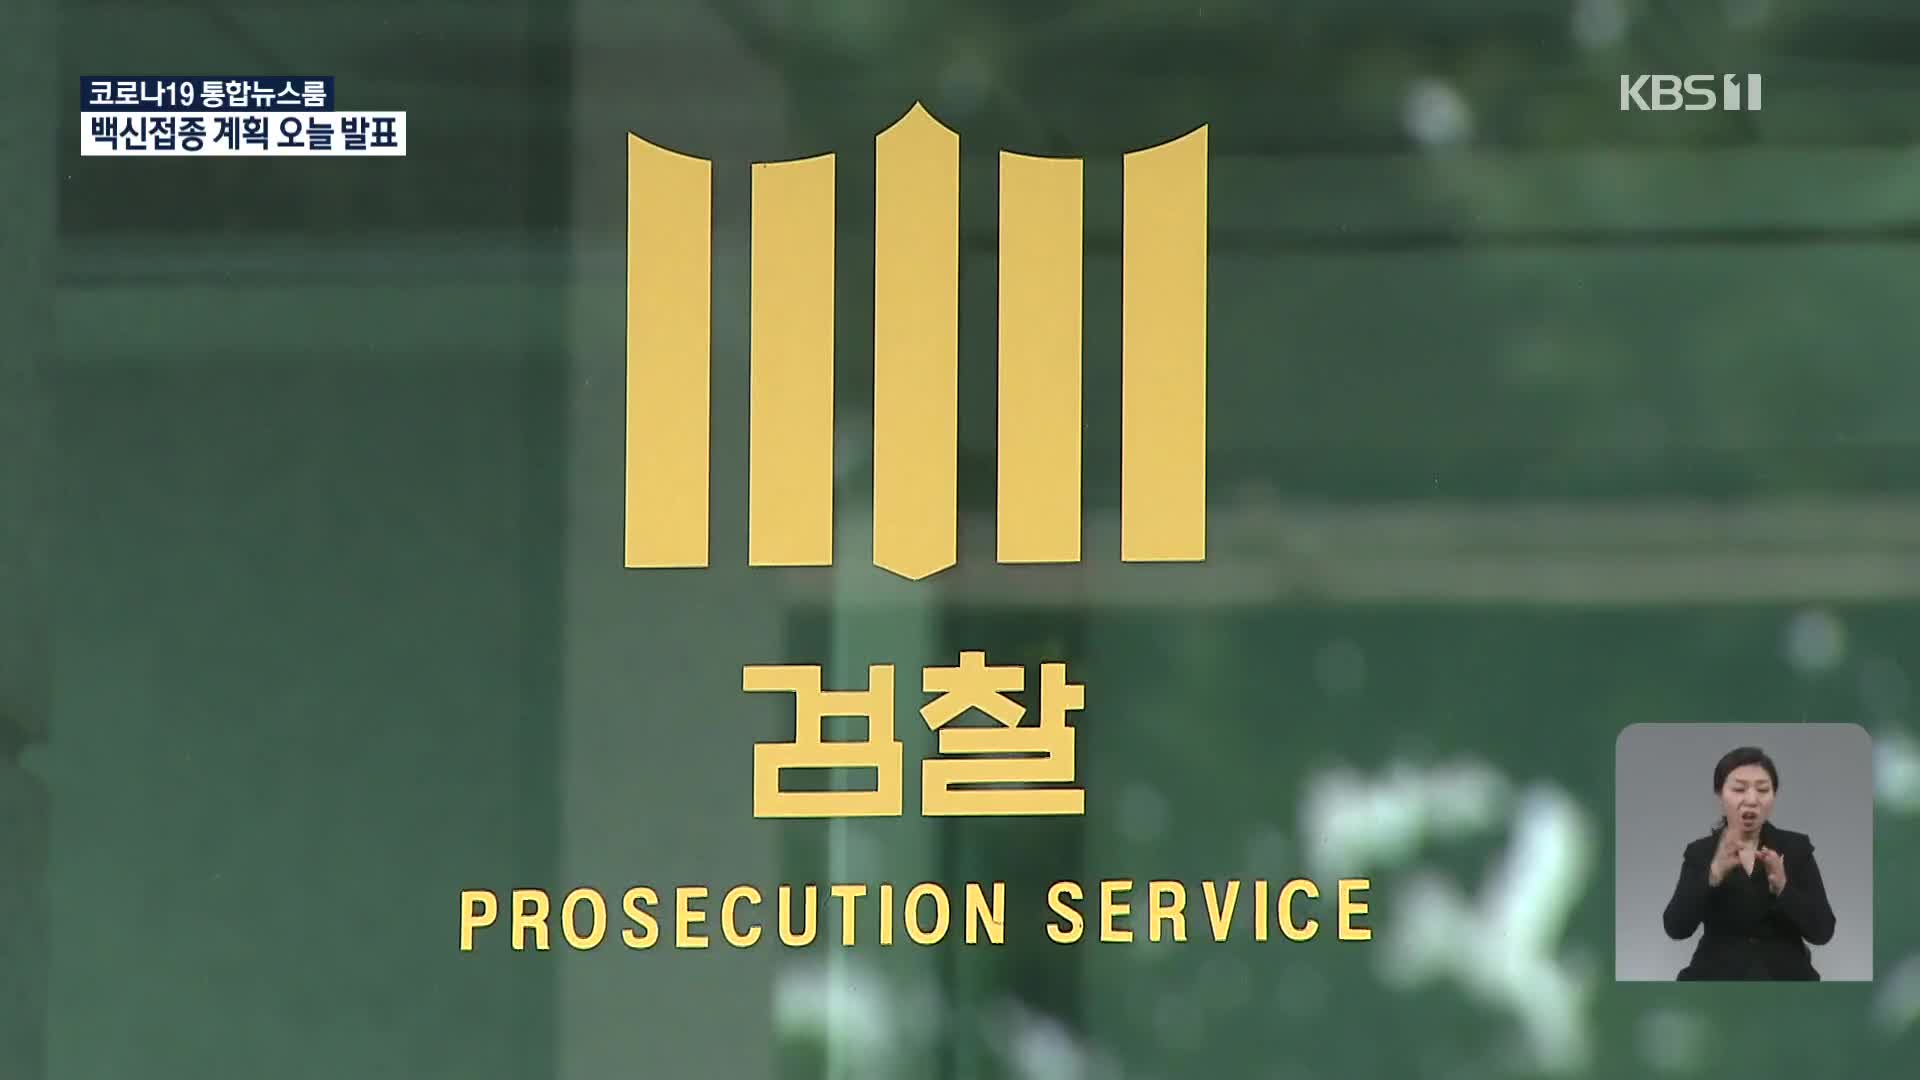 [단독] 김봉현 도피 도왔다는 전 검찰 수사관도 휴대전화 없앴다